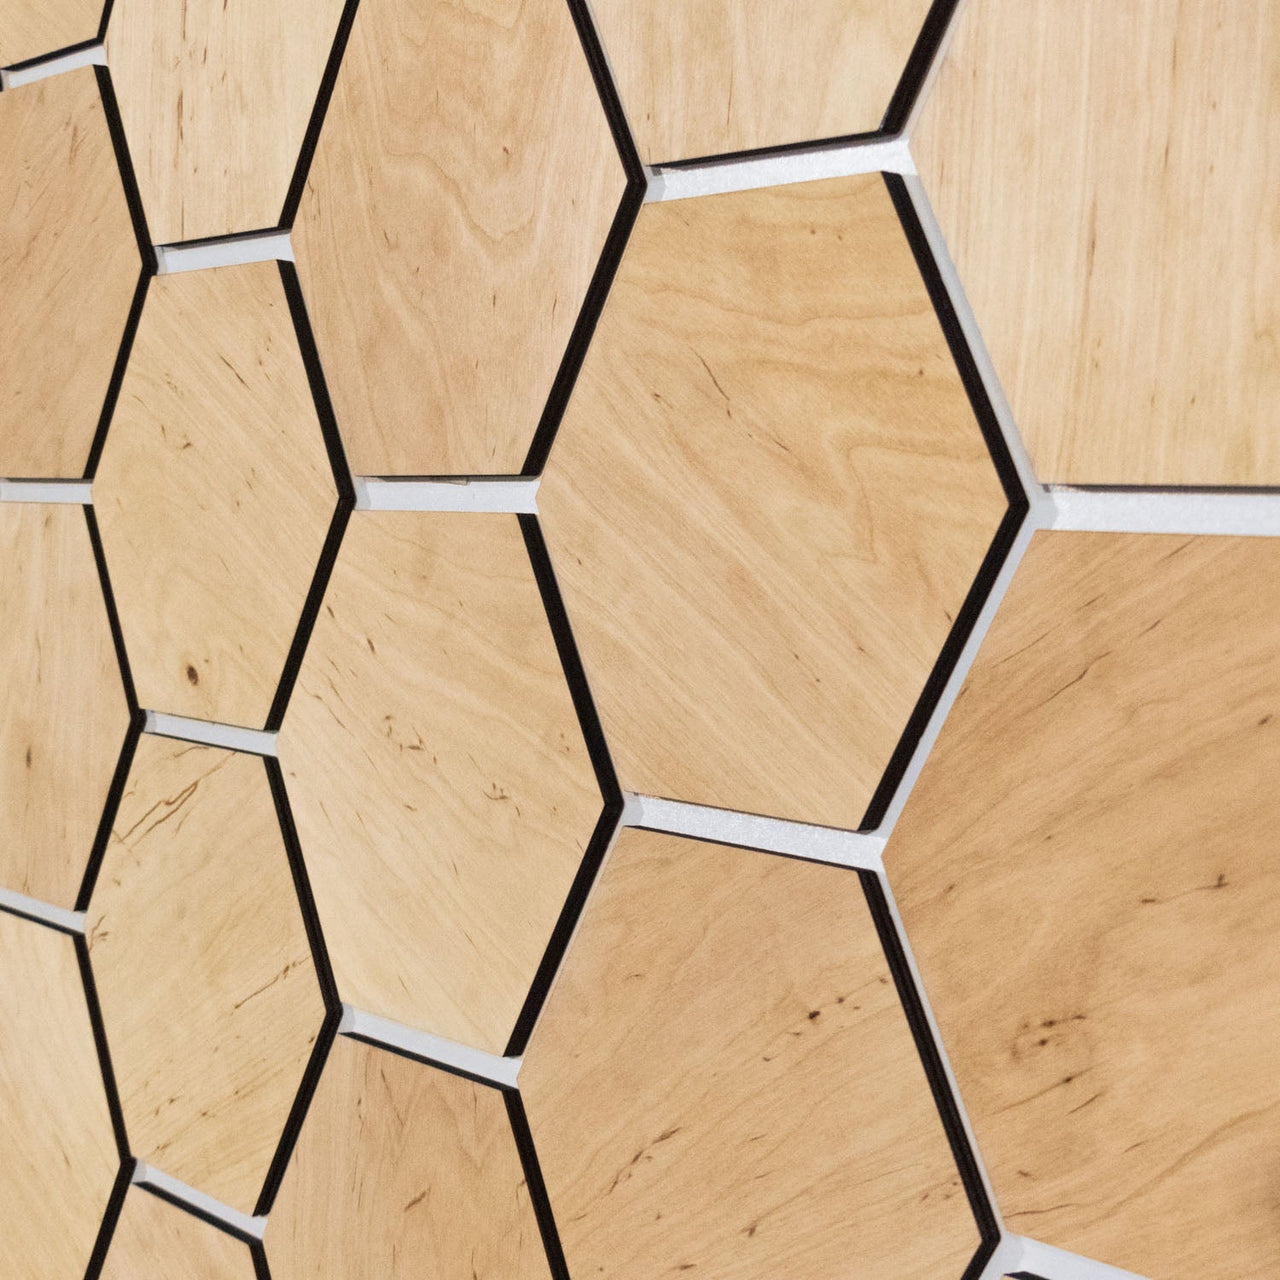 Light Hexagon Wooden Wall Panels by Hexagonica